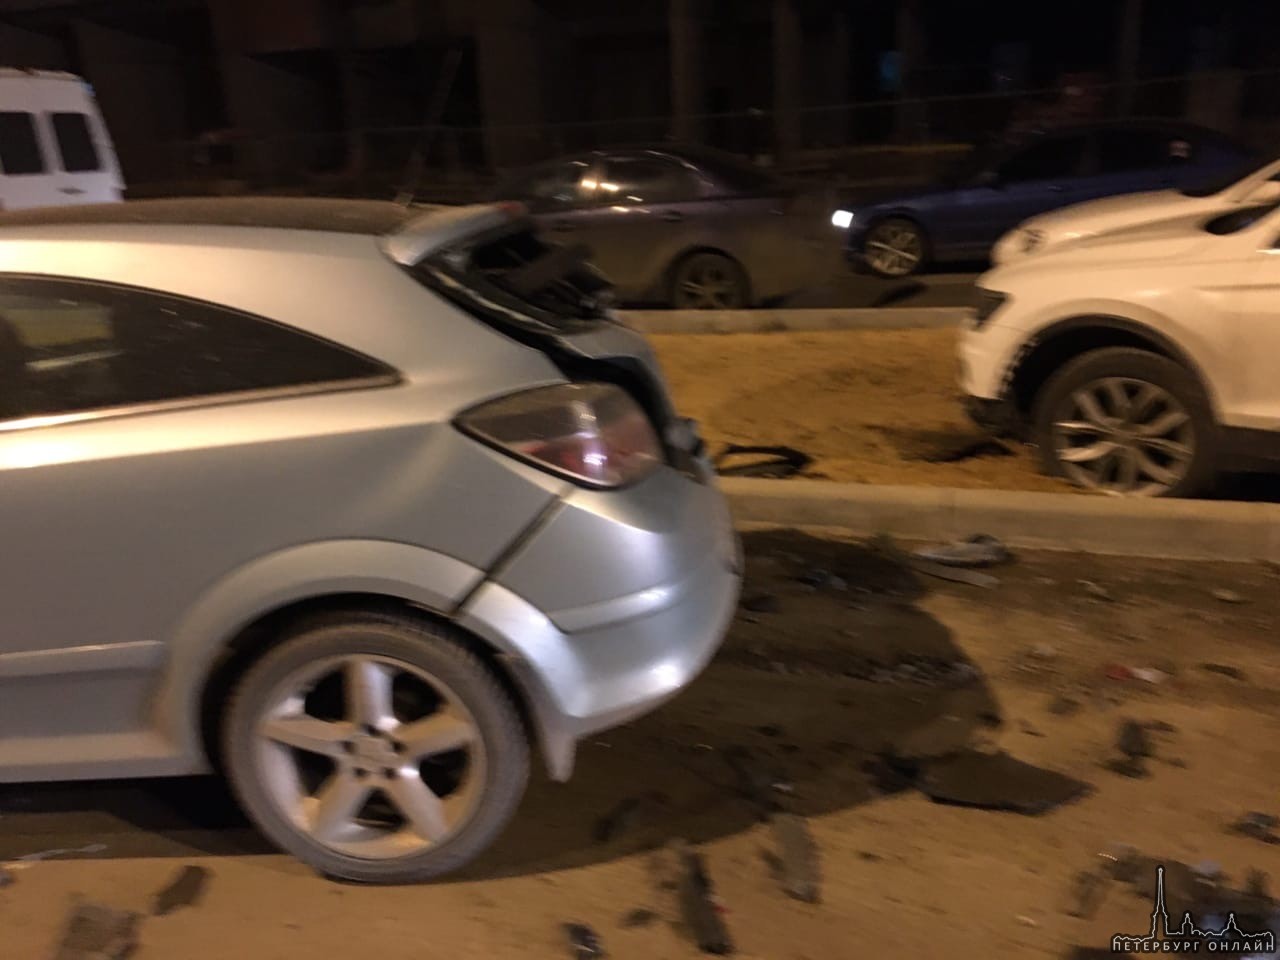 Сегодня ночью произошла авария на проспекте Ветеранов в ЖК "Солнечный город" в Красносельском районе...